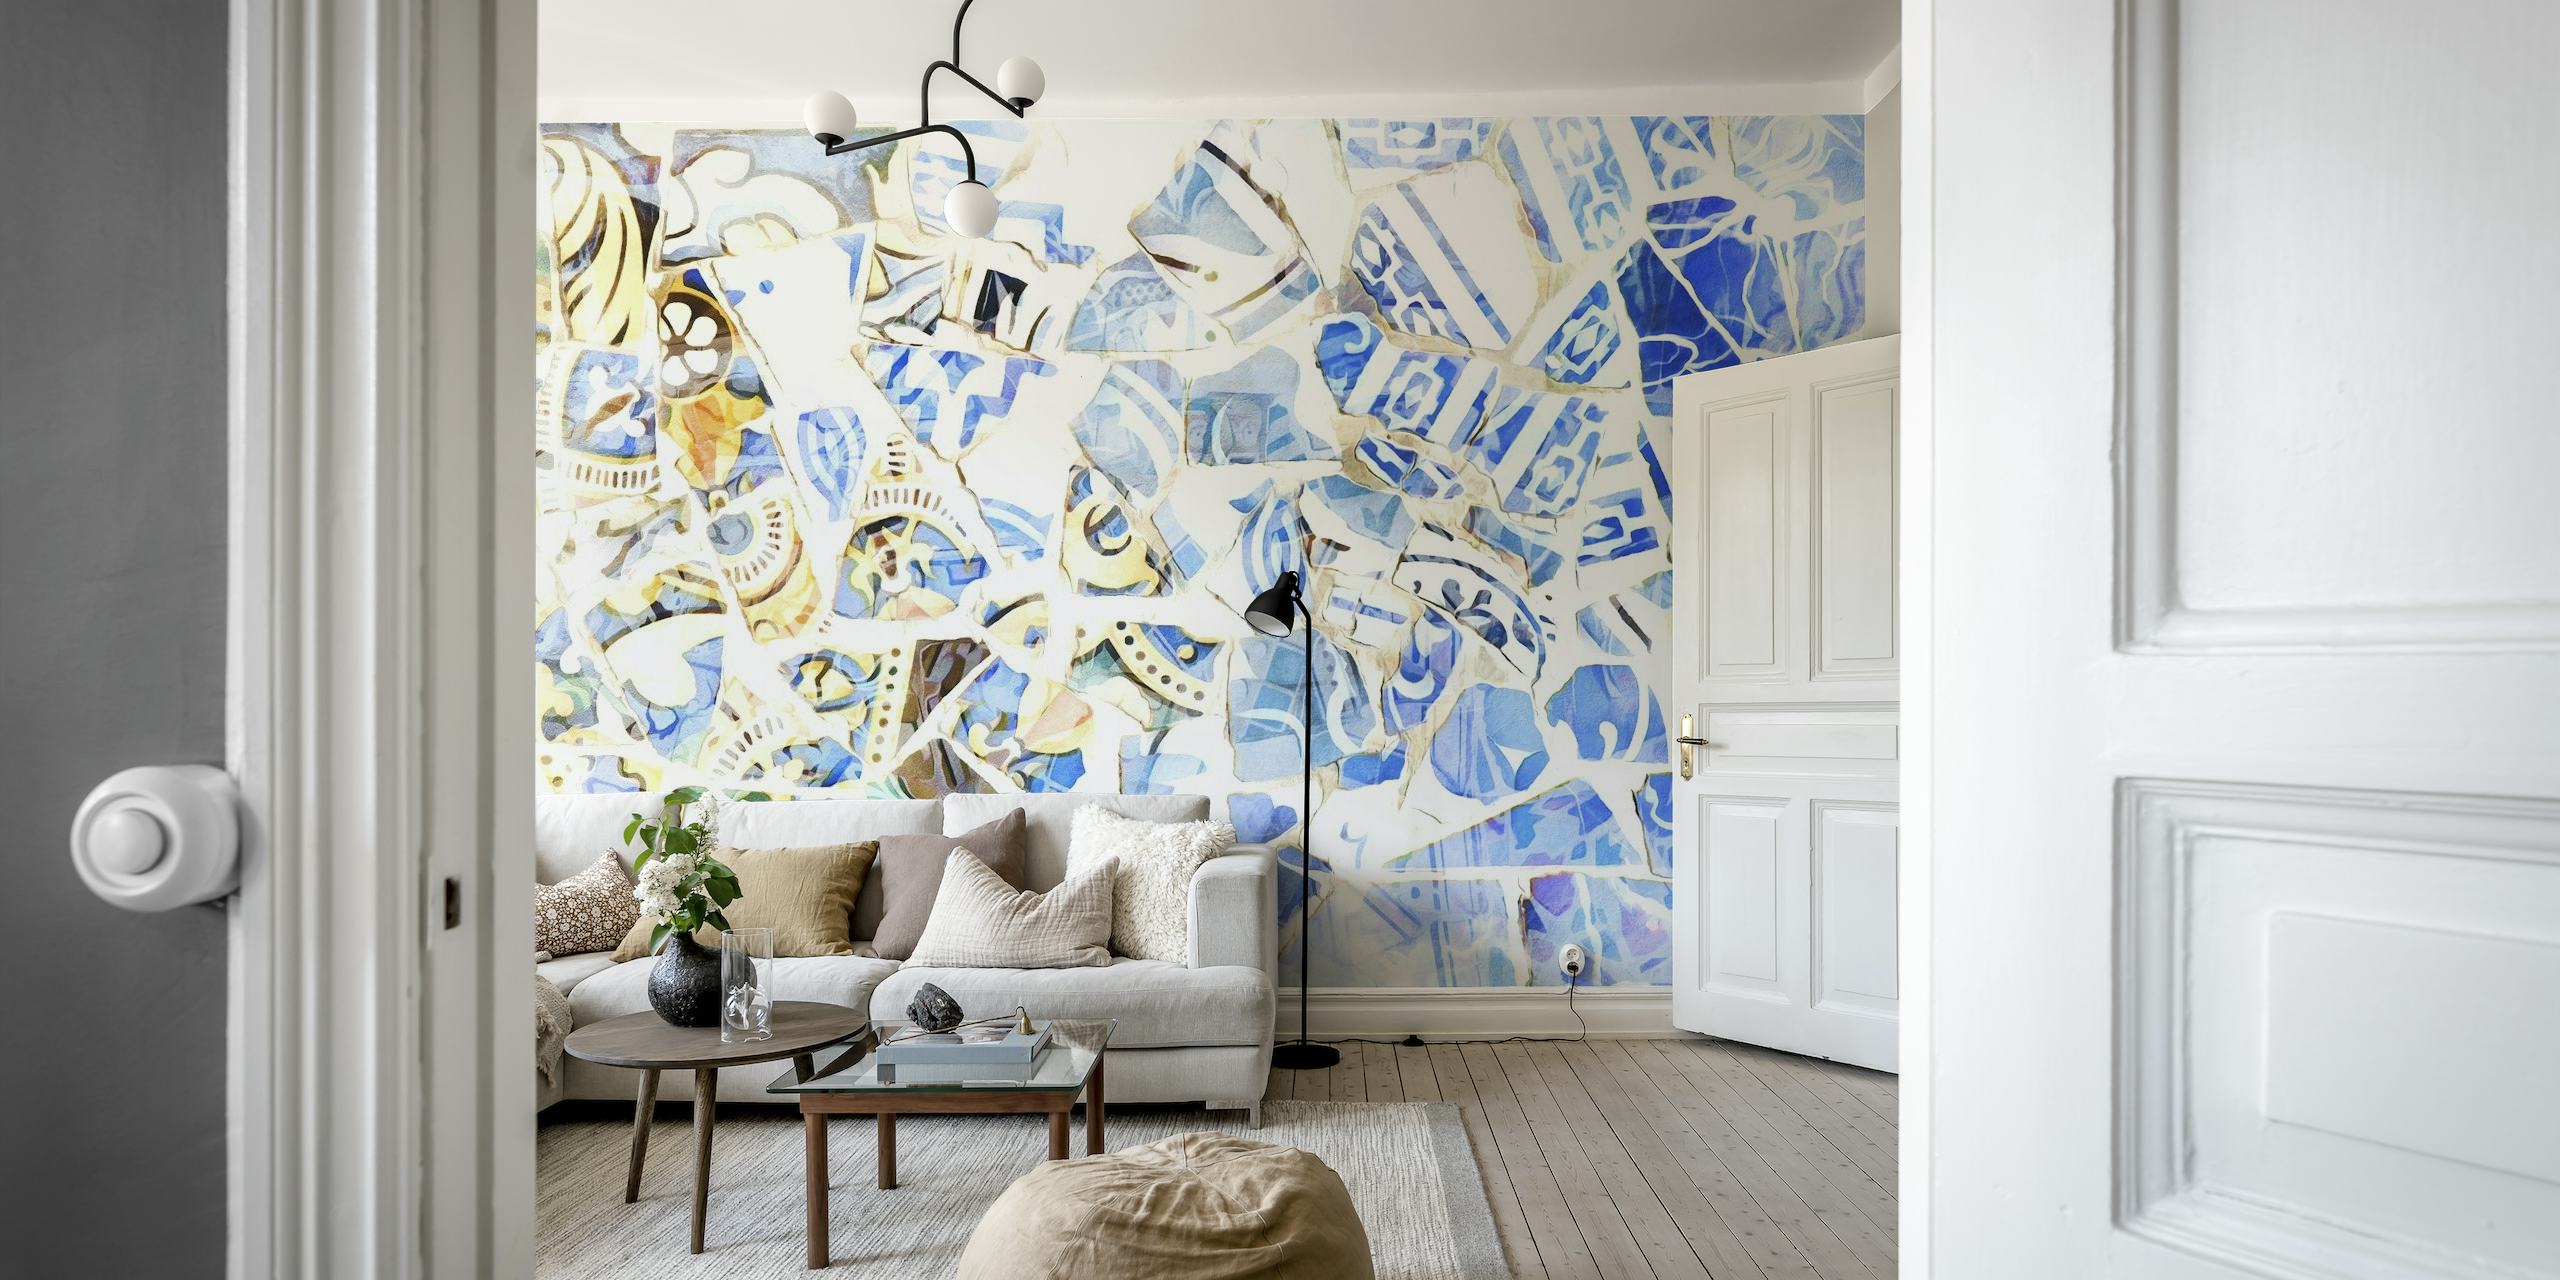 Abstrakti mosaiikkiseinämaalaus sinisen ja valkoisen sävyissä, Barcelonan taiteen inspiroima